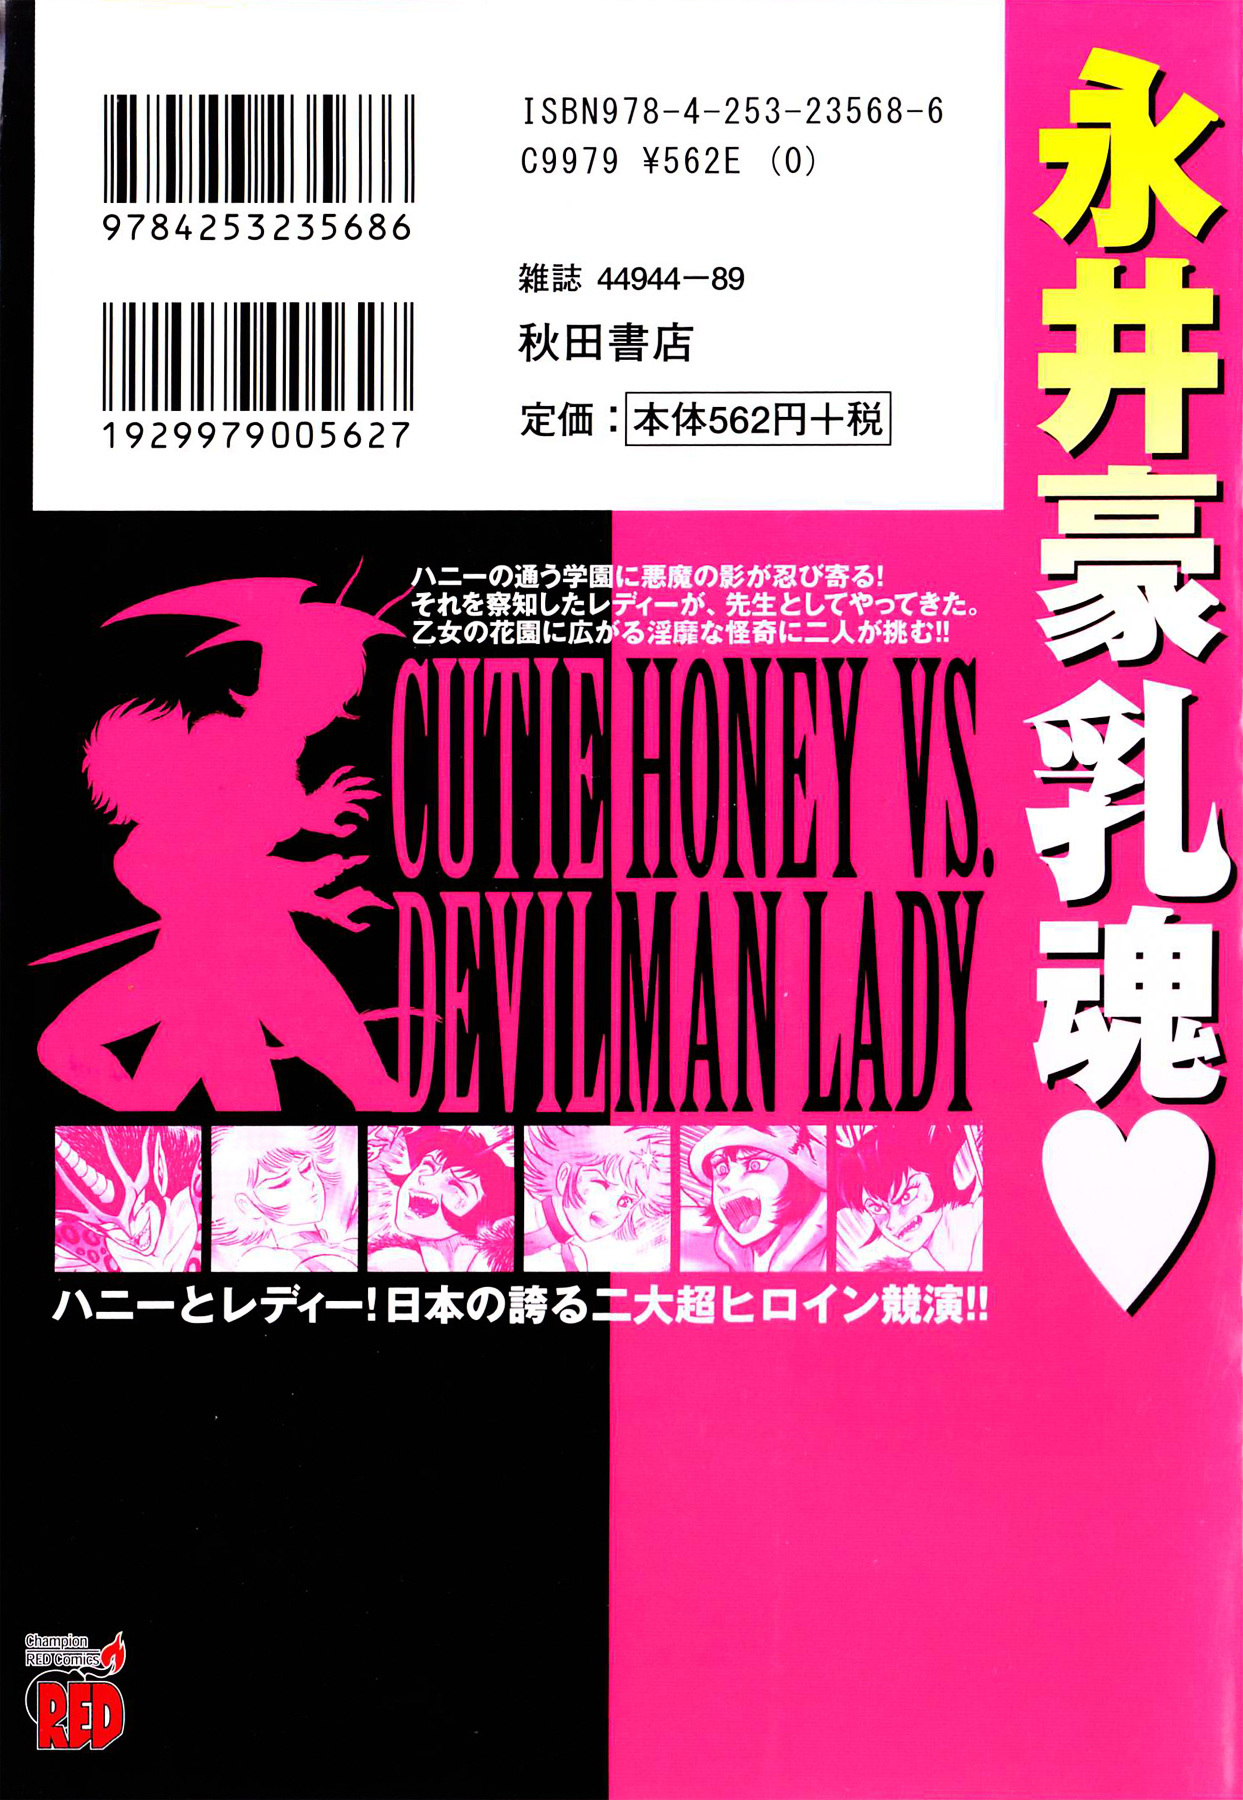 Cutie Honey Vs. Devilman Lady Vol.1 Chapter 1 - Picture 2